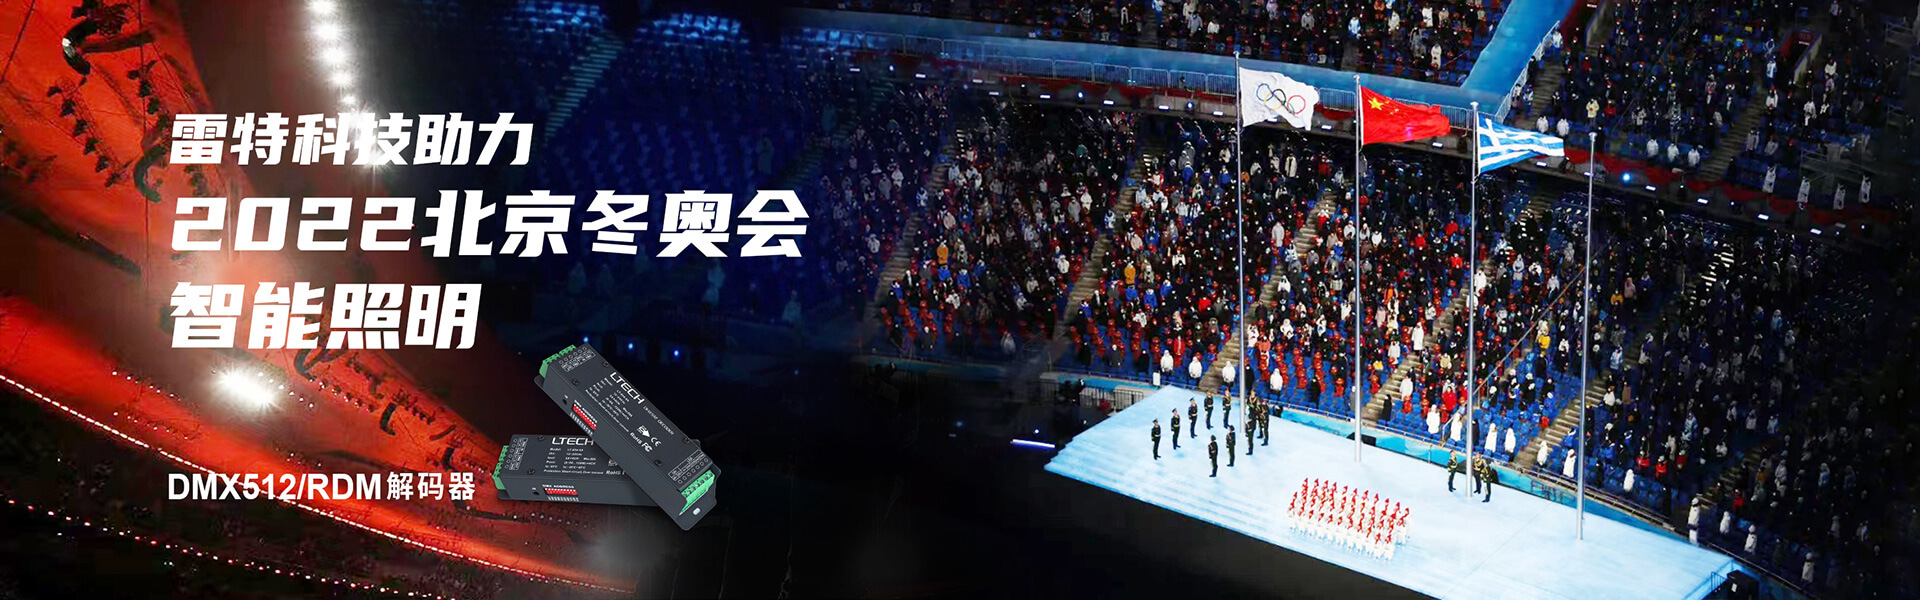 雷特科技助力2022北京冬奧會